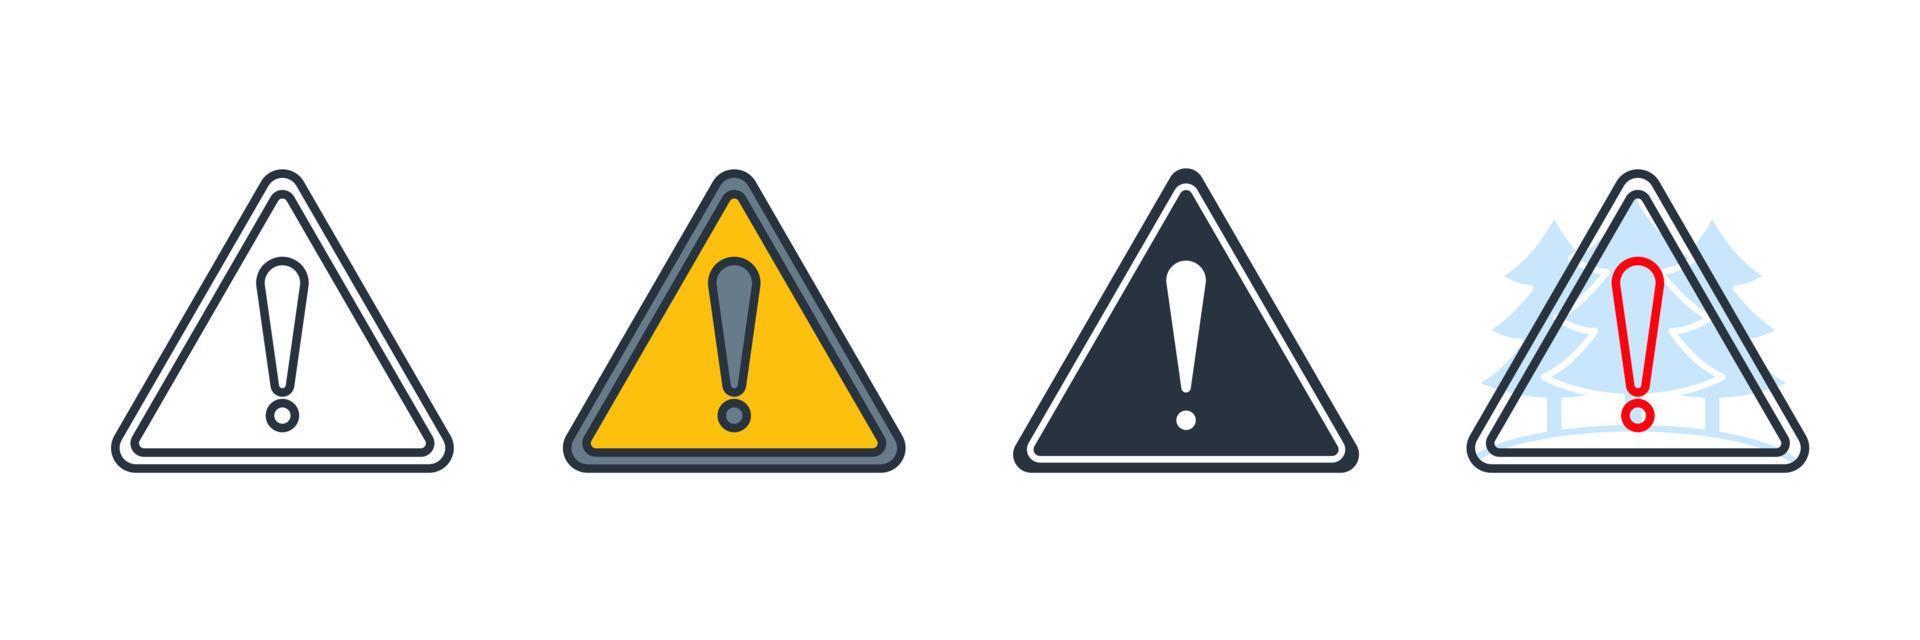 waarschuwing pictogram logo vectorillustratie. gevaar waarschuwingssymbool sjabloon voor grafische en webdesign collectie vector